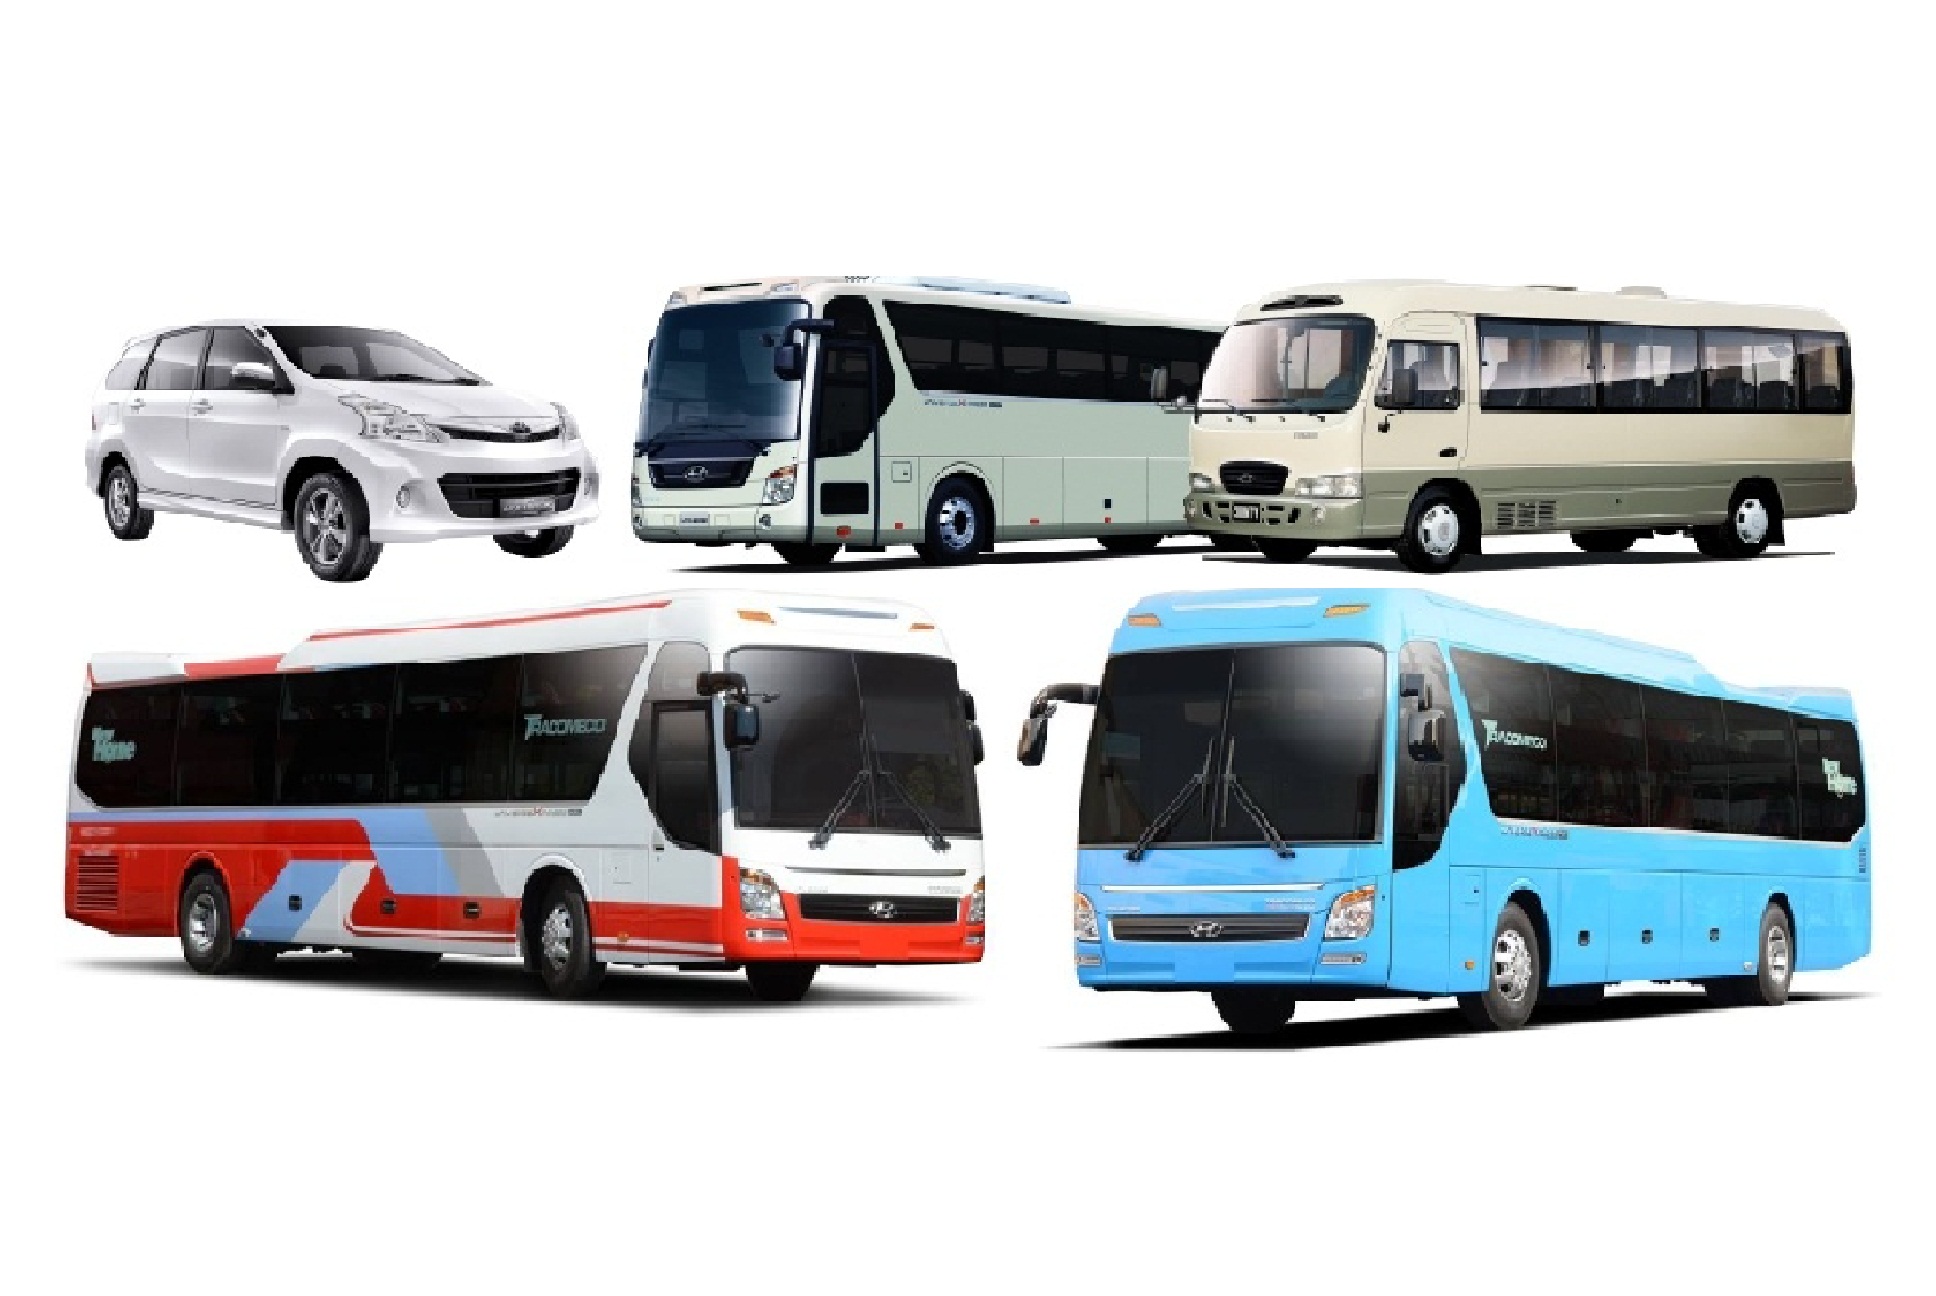 Danh sách các xe di chuyển từ bến xe Miền Tây đi Đồng Nai – Lịch trình, giá vé